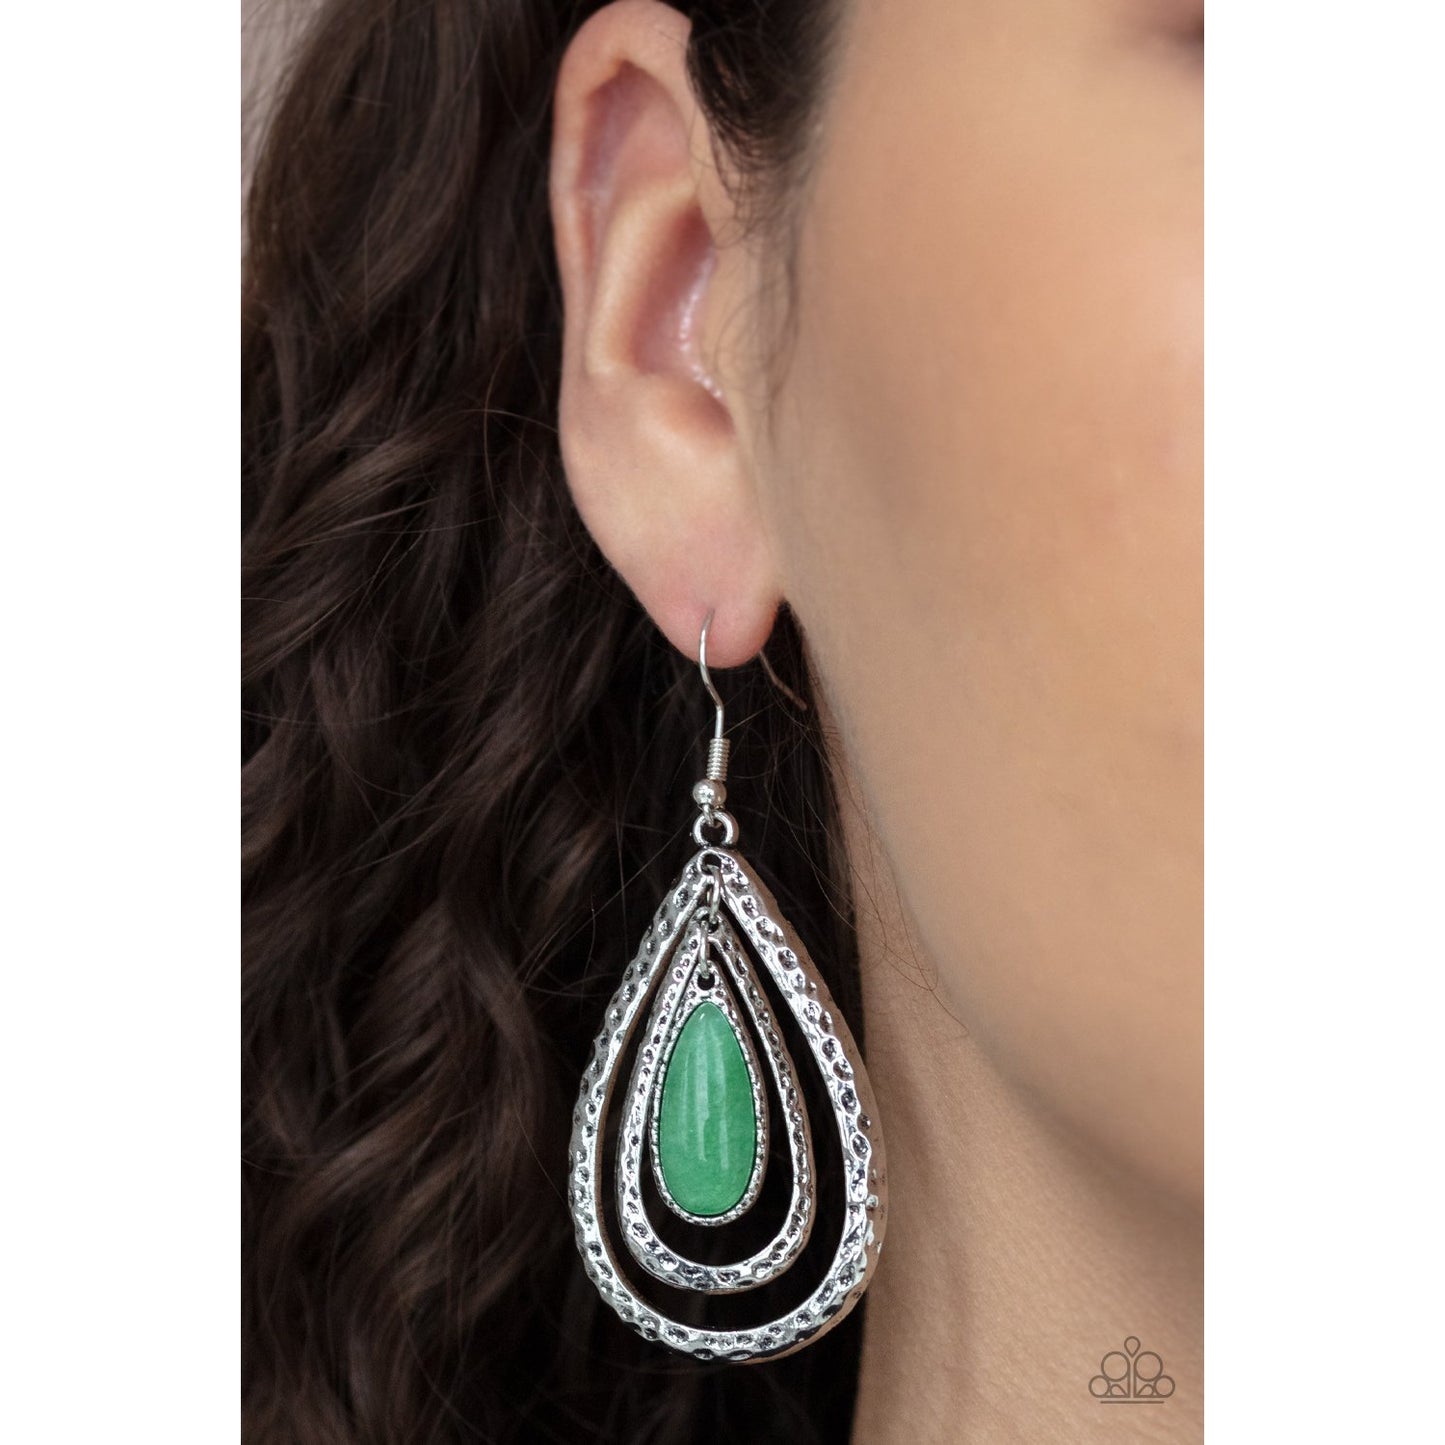 Teardrop Torrent - Green Teardrop Earrings - Paparazzi Accessories - GlaMarous Titi Jewels